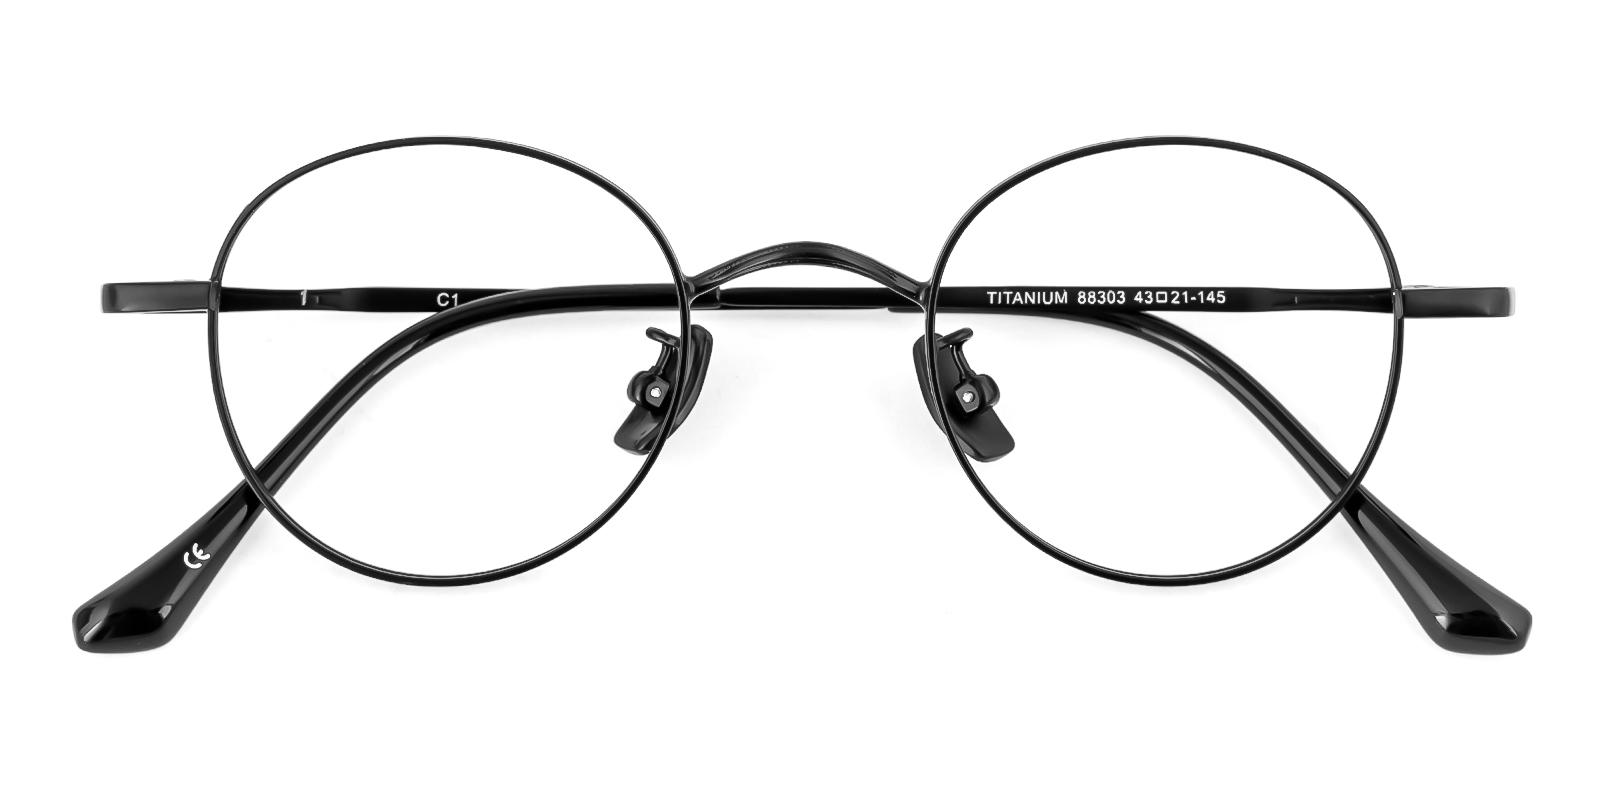 Candarian Black Titanium Eyeglasses , NosePads Frames from ABBE Glasses